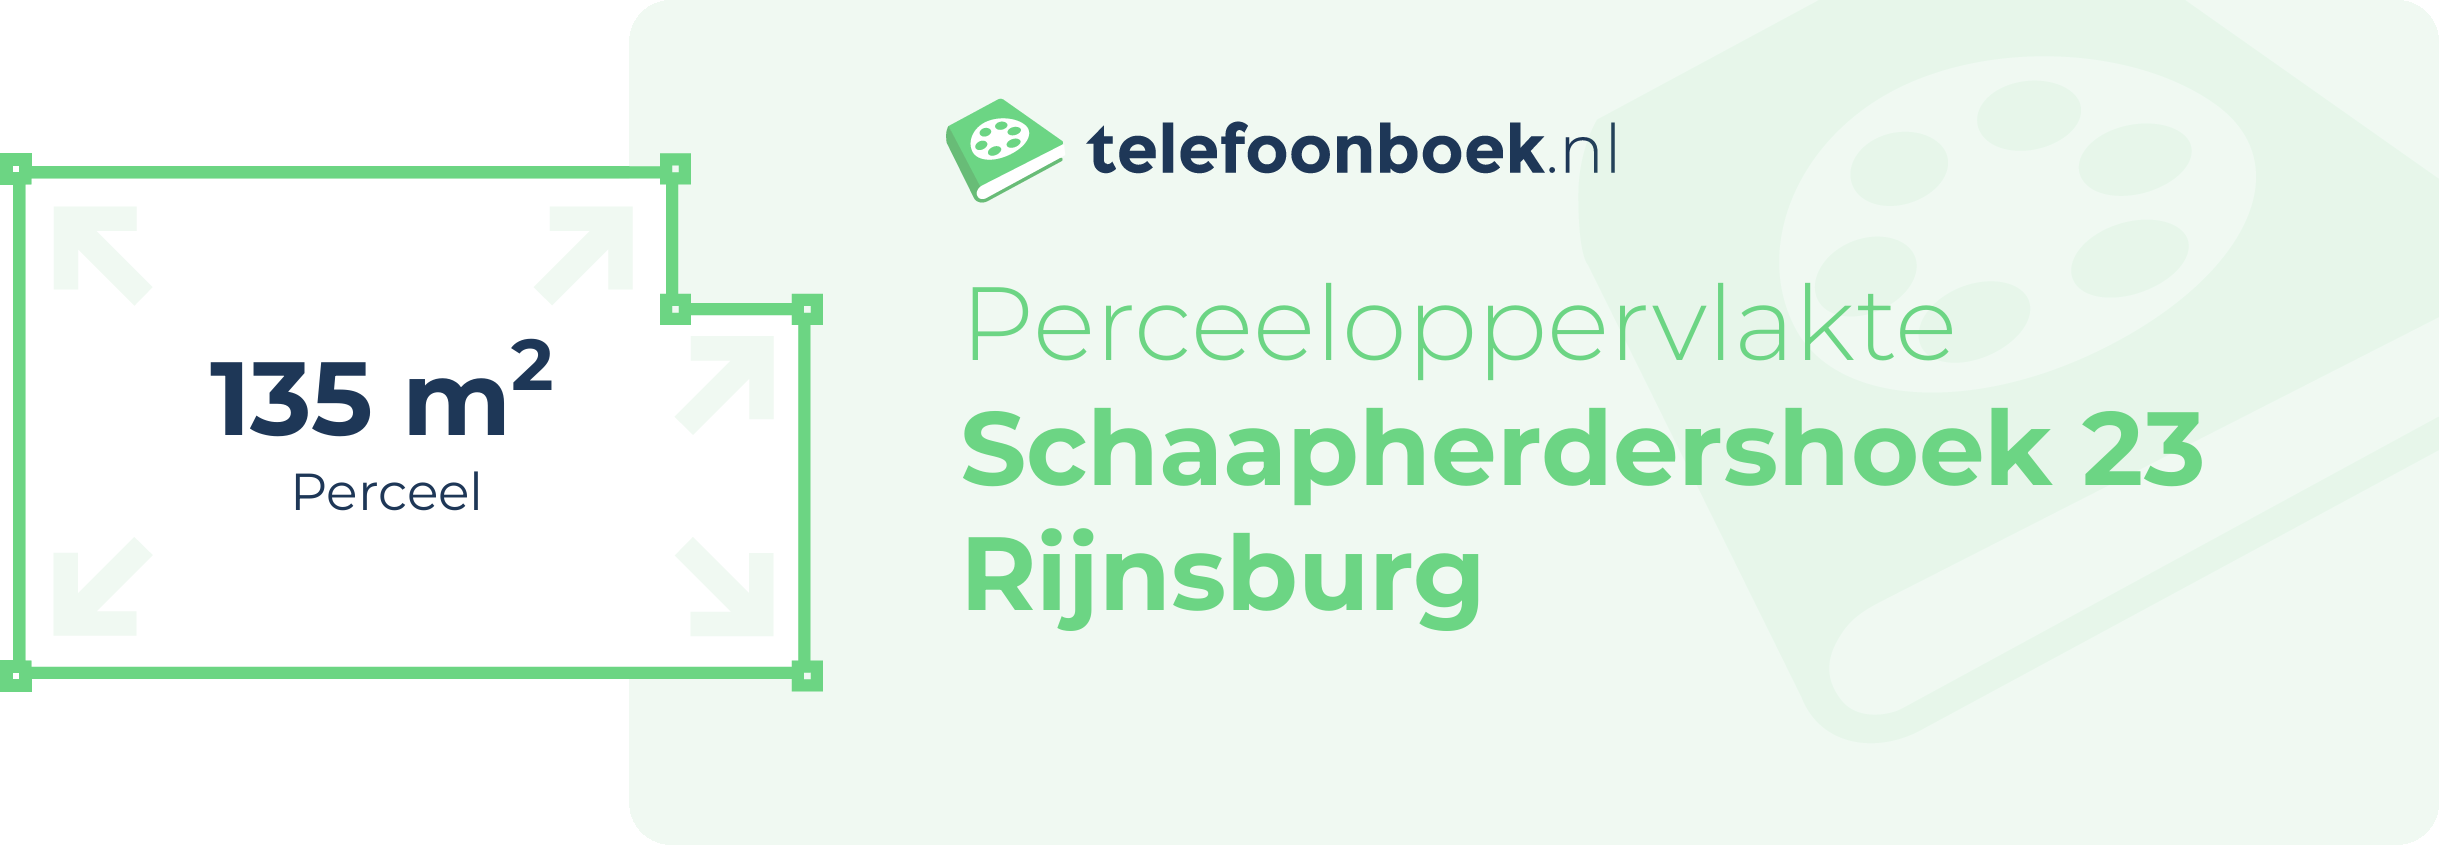 Perceeloppervlakte Schaapherdershoek 23 Rijnsburg